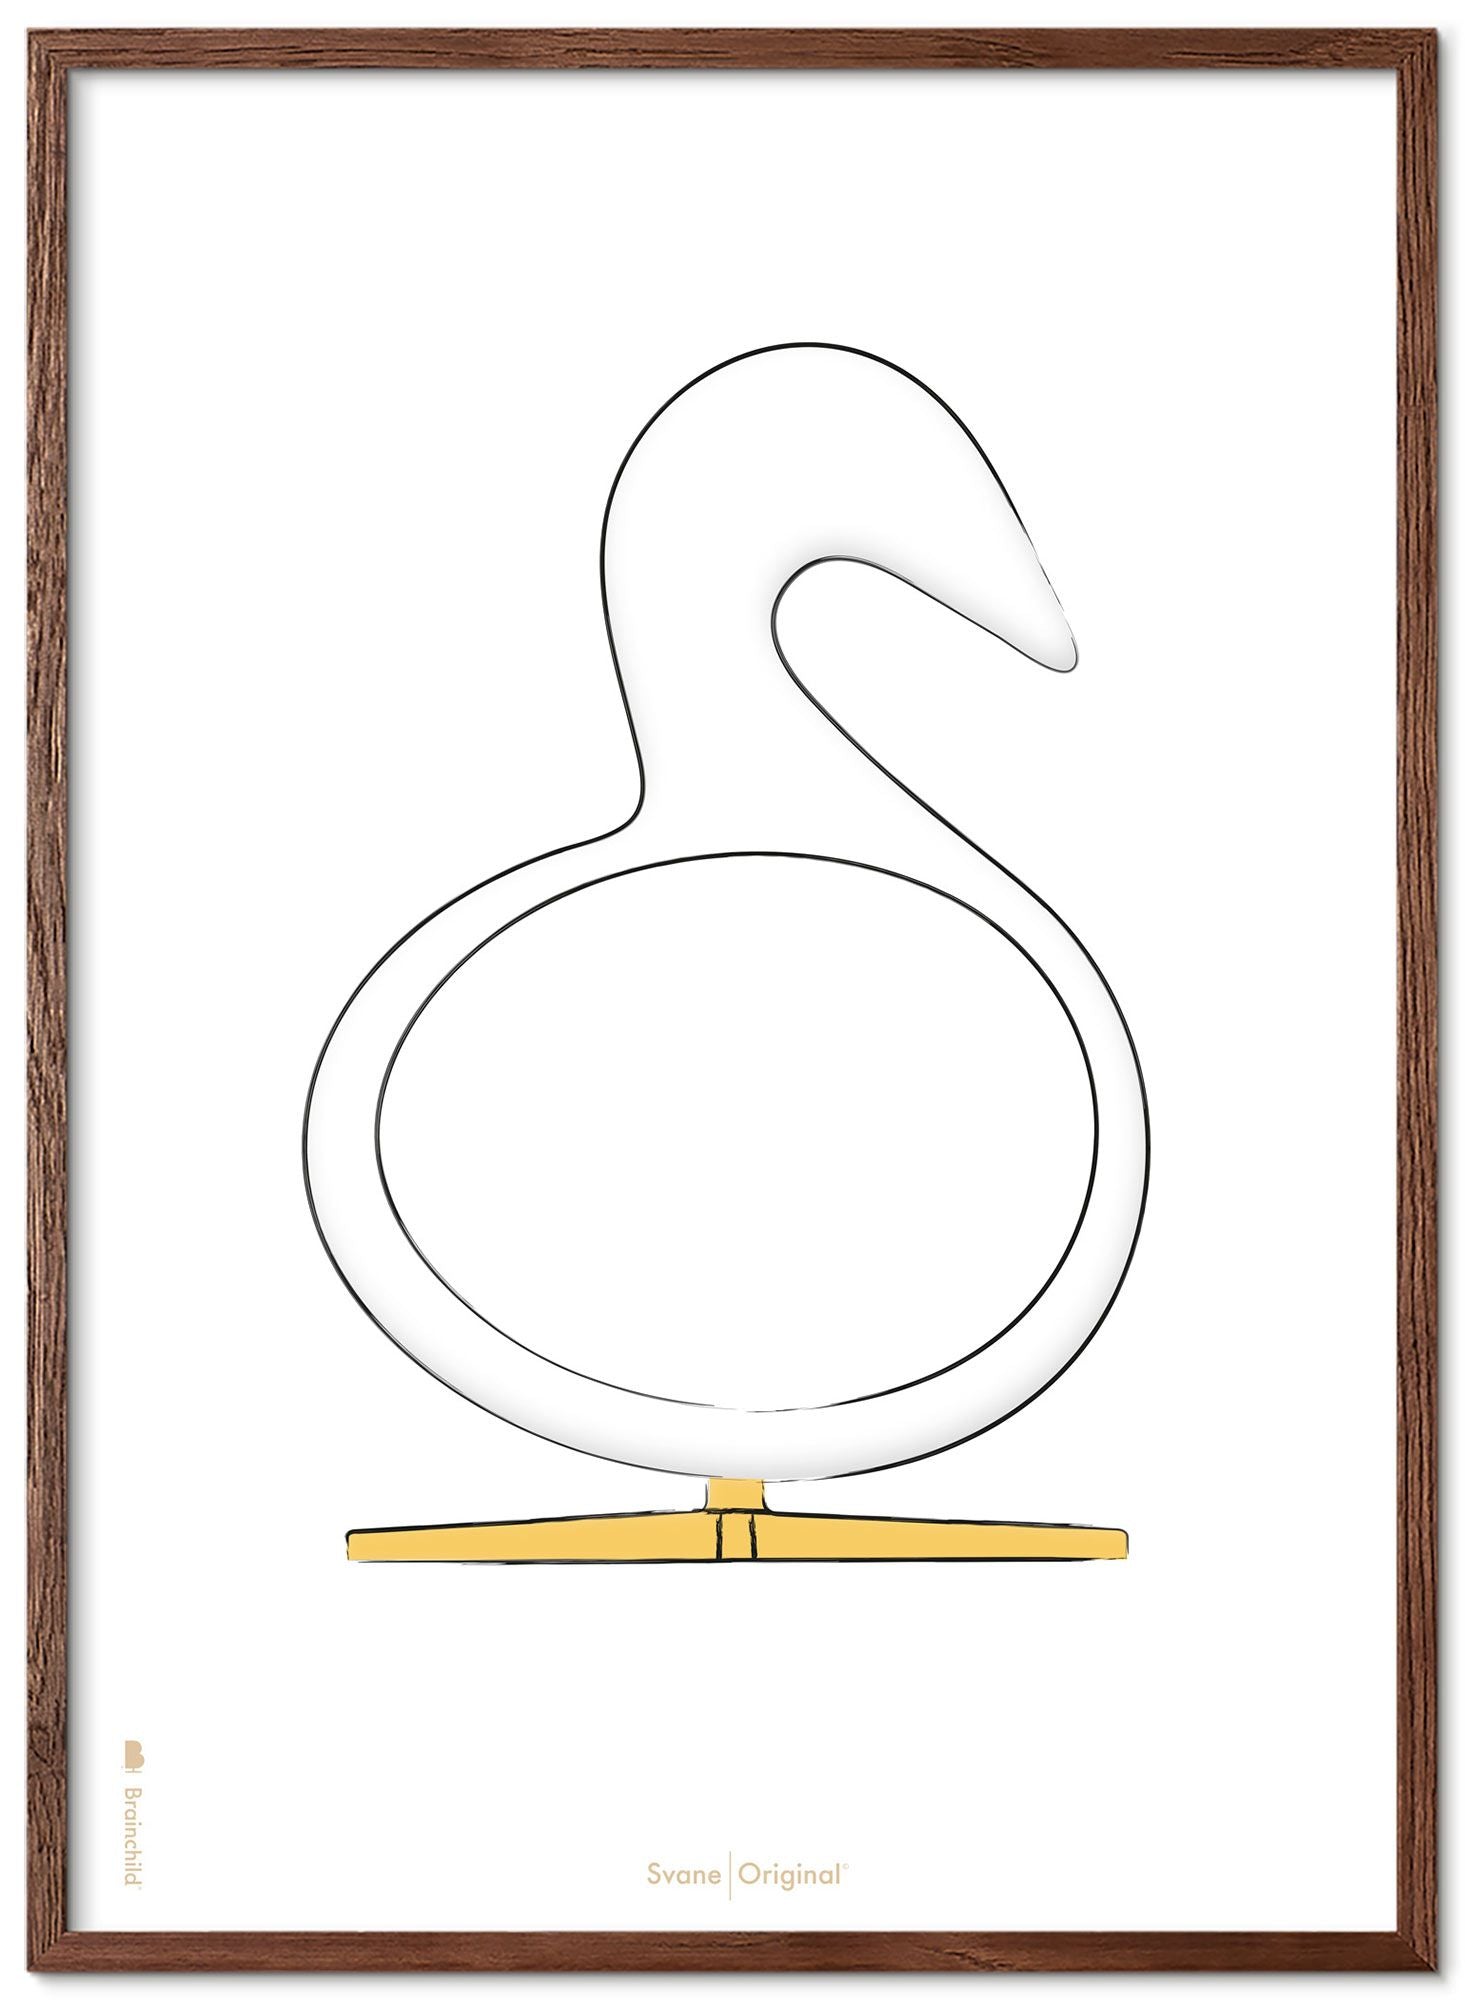 Brainchild Swan Design Sketch Poster Frame Made of Dark Wood 30x40 cm, hvit bakgrunn